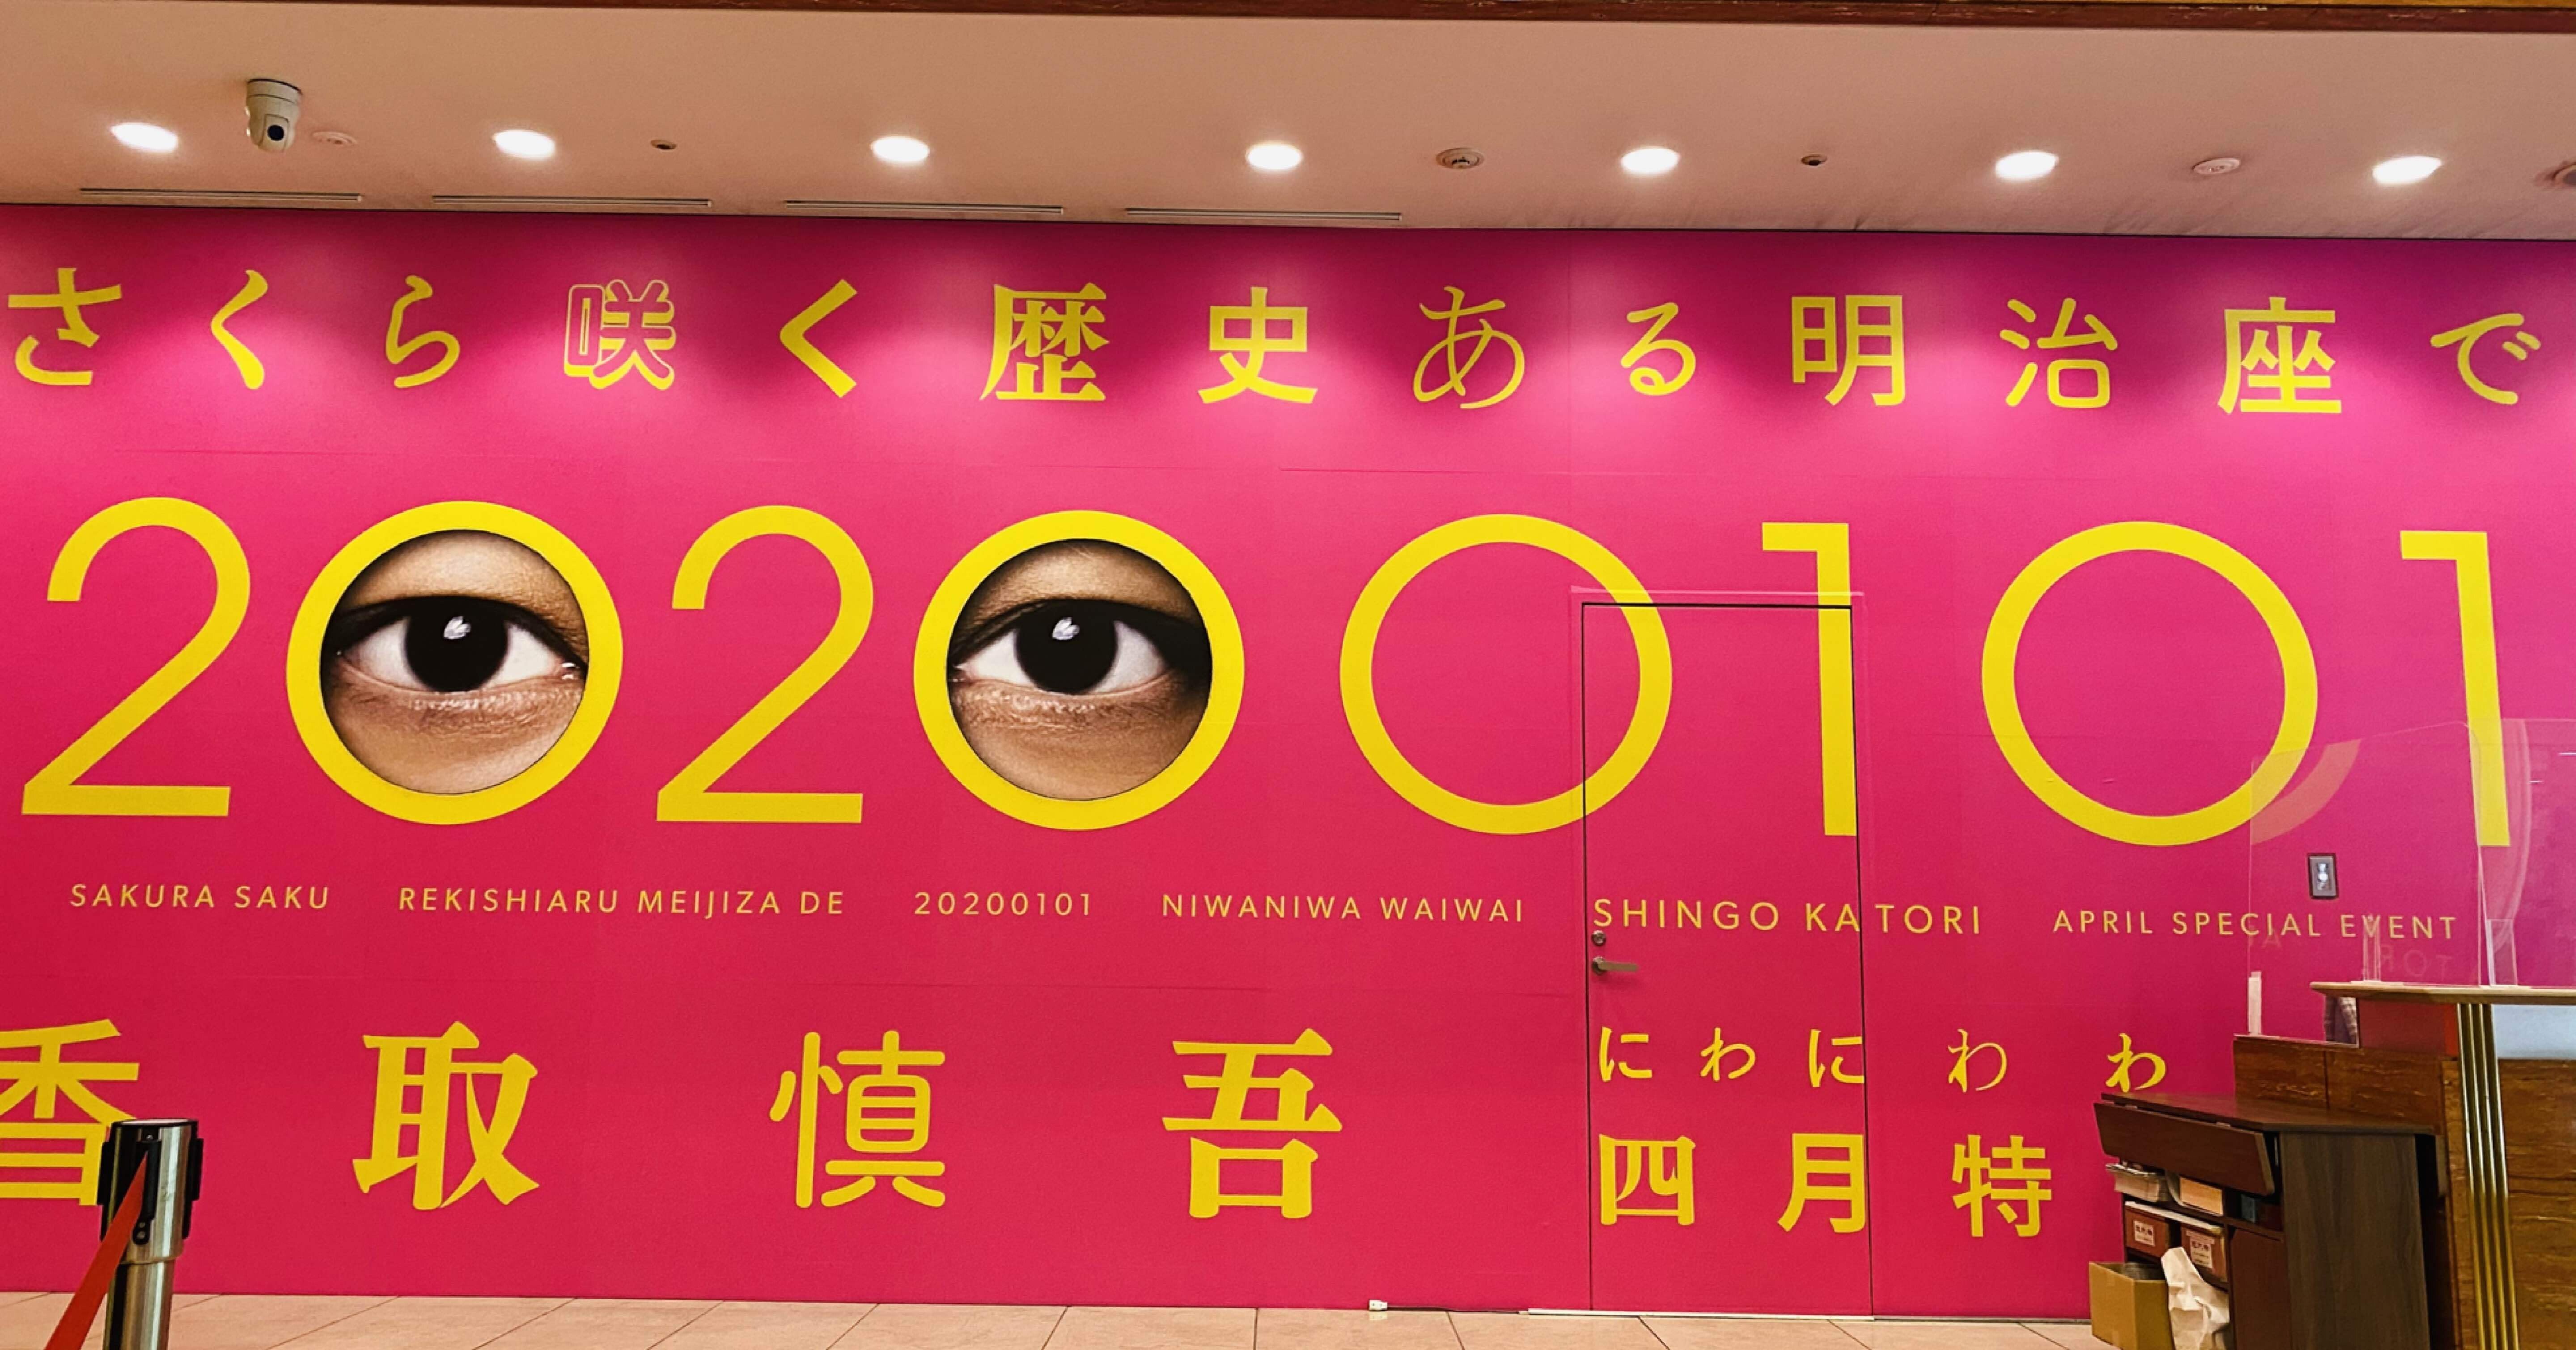 さくら咲く歴史ある明治座で 20200101 にわにわわいわい 香取慎吾四月 